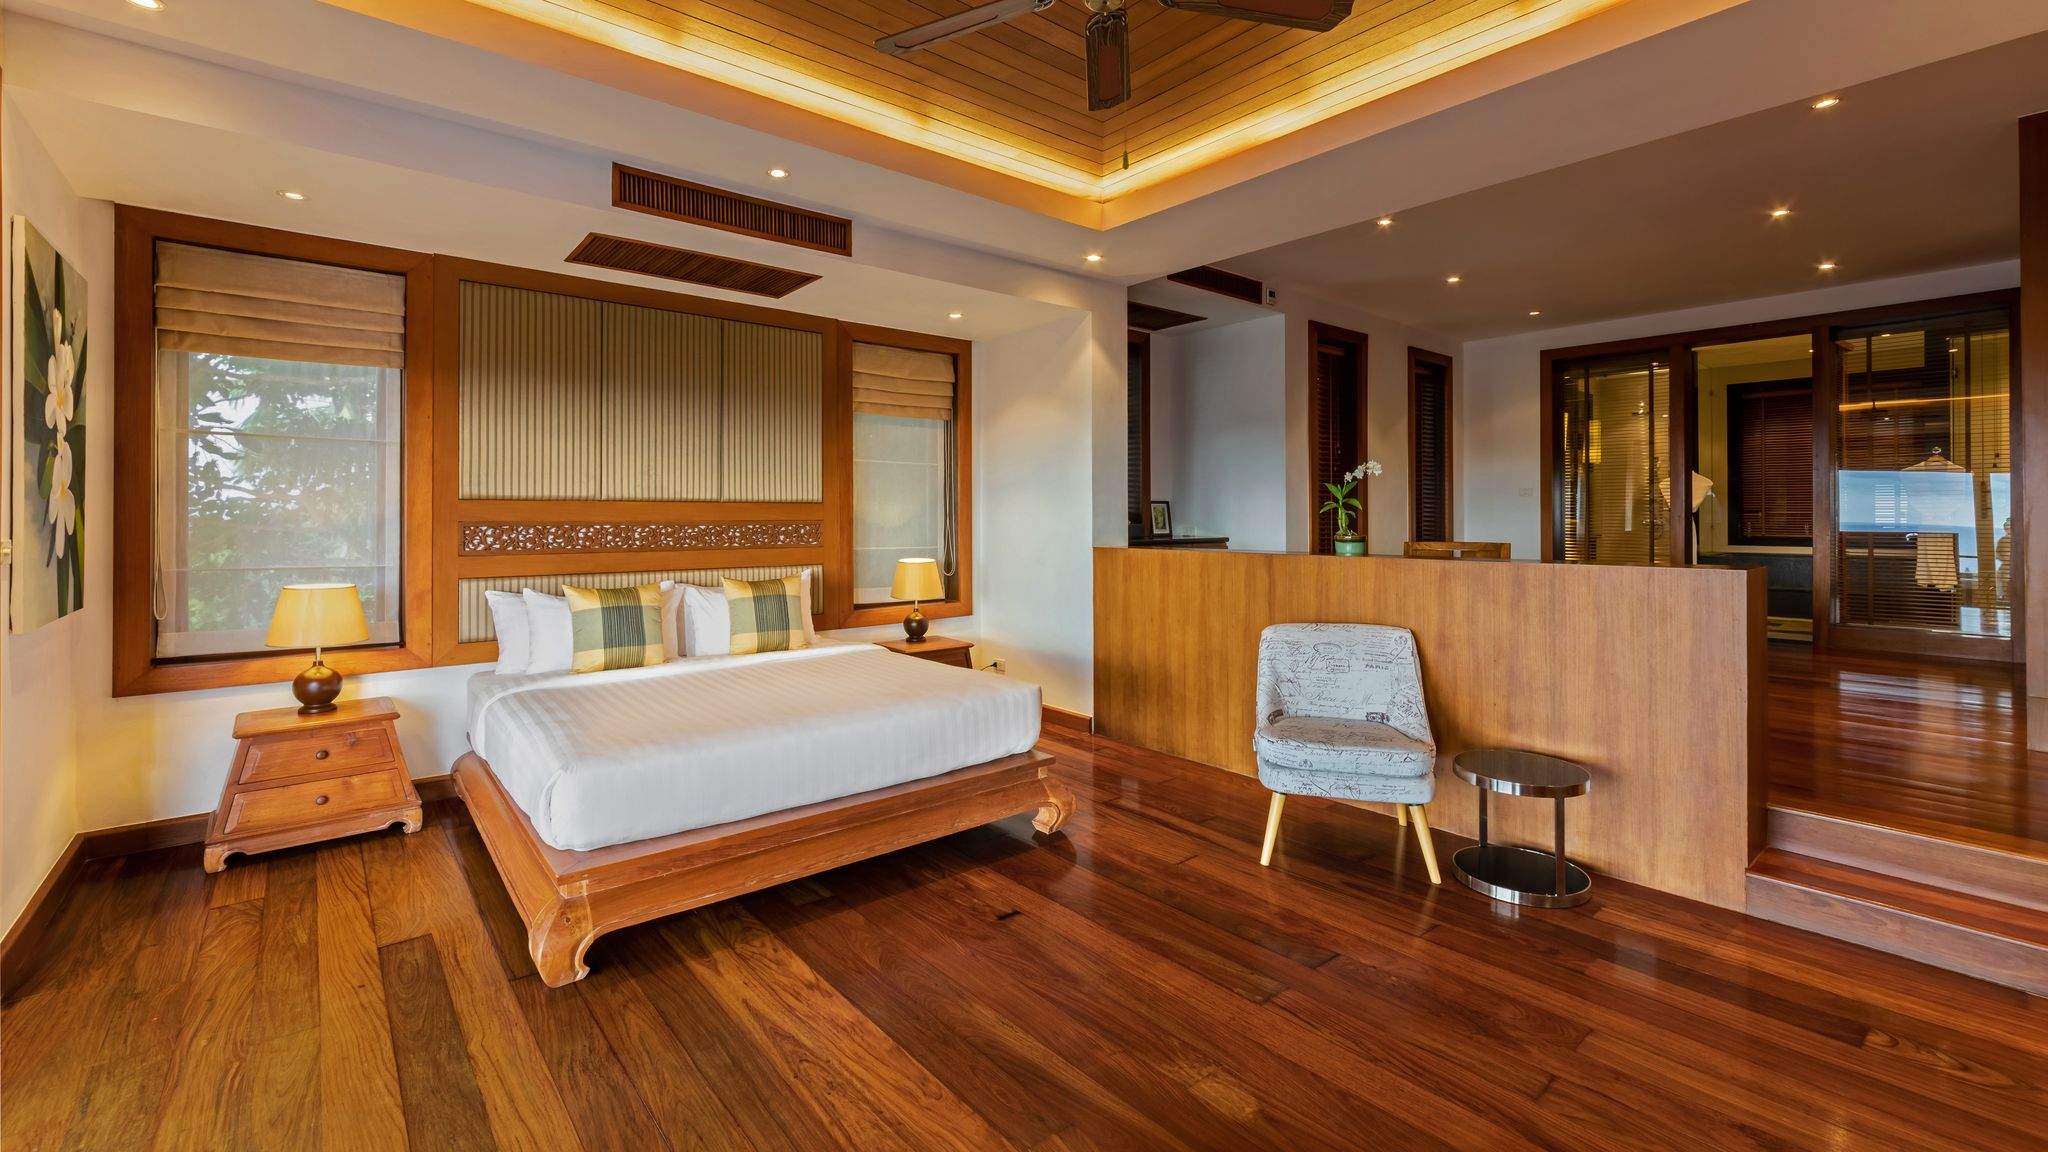 Rent villa Yang Som, Thailand, Phuket, Surin | Villacarte